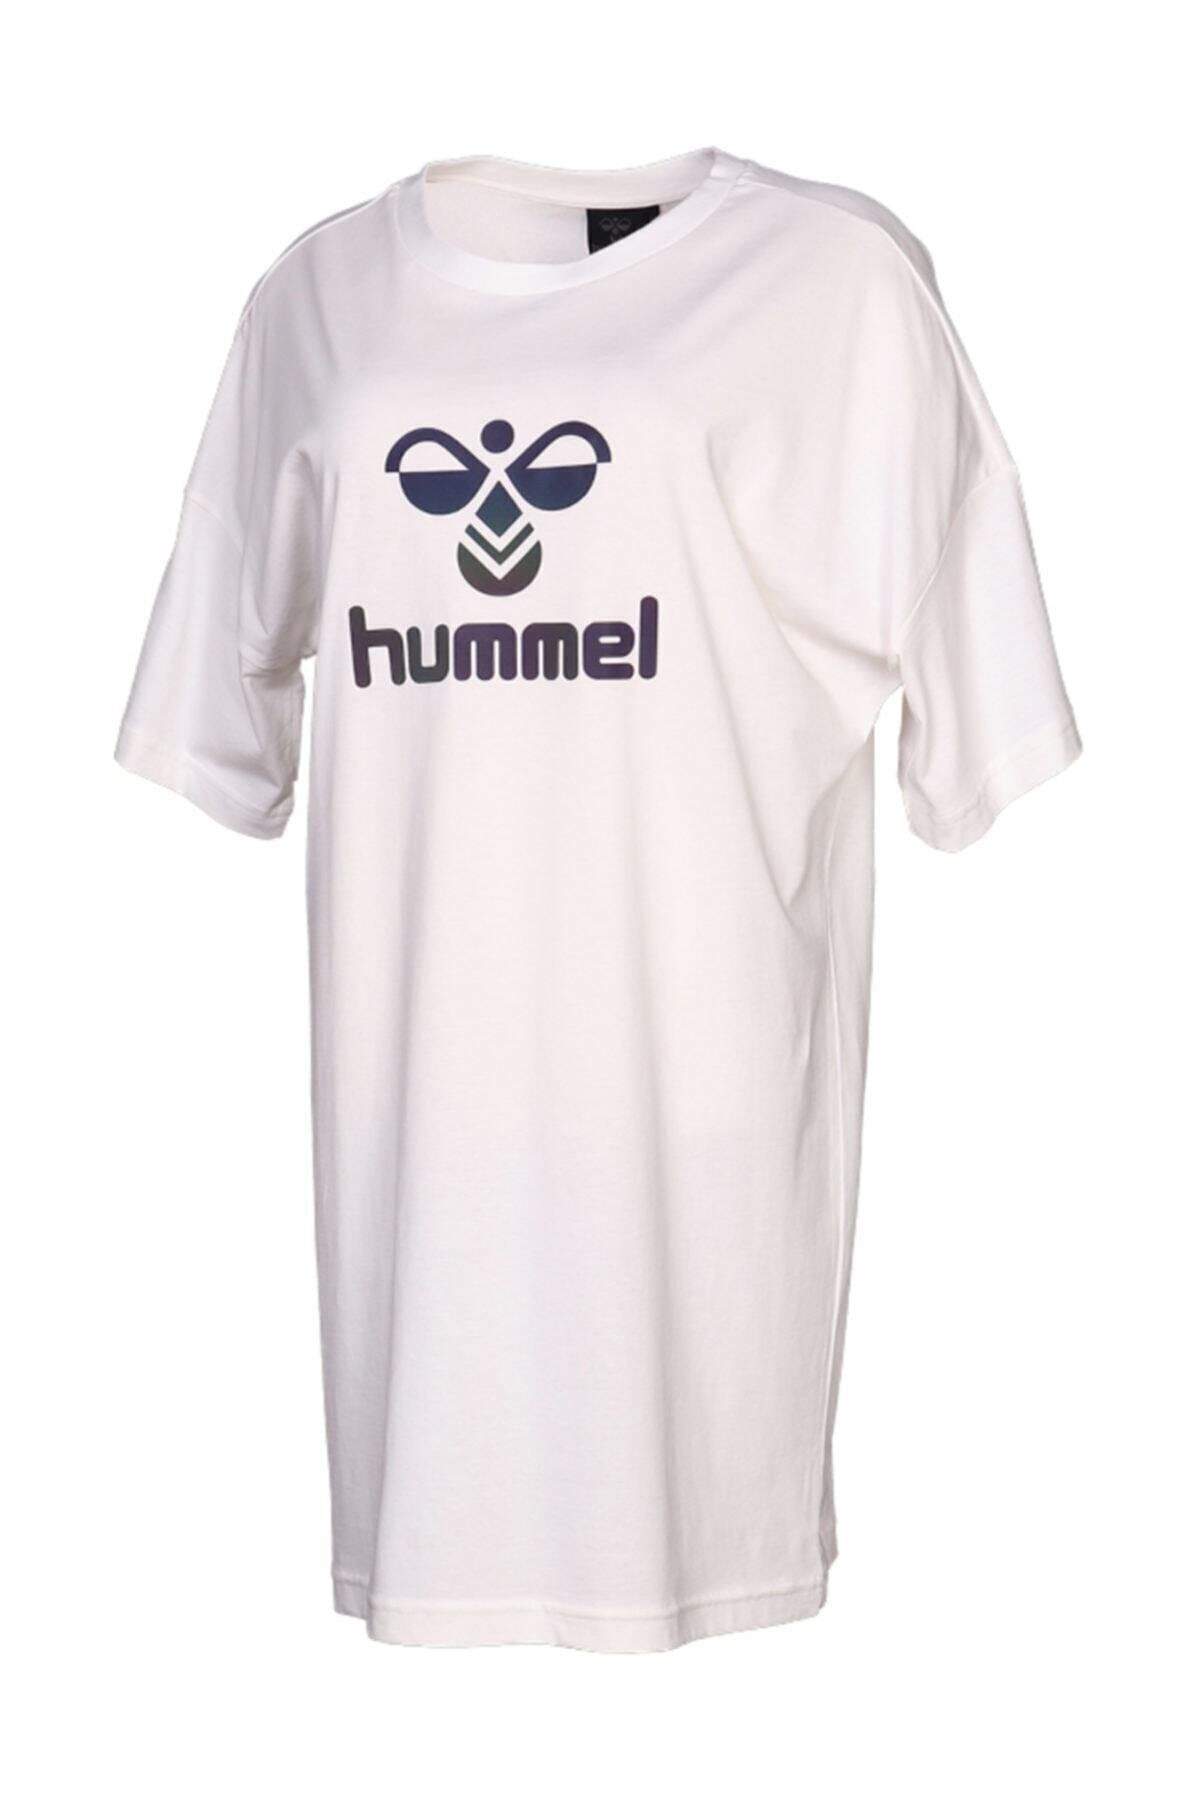 hummel Kadın Elbise - 920875-9003/BEYAZ